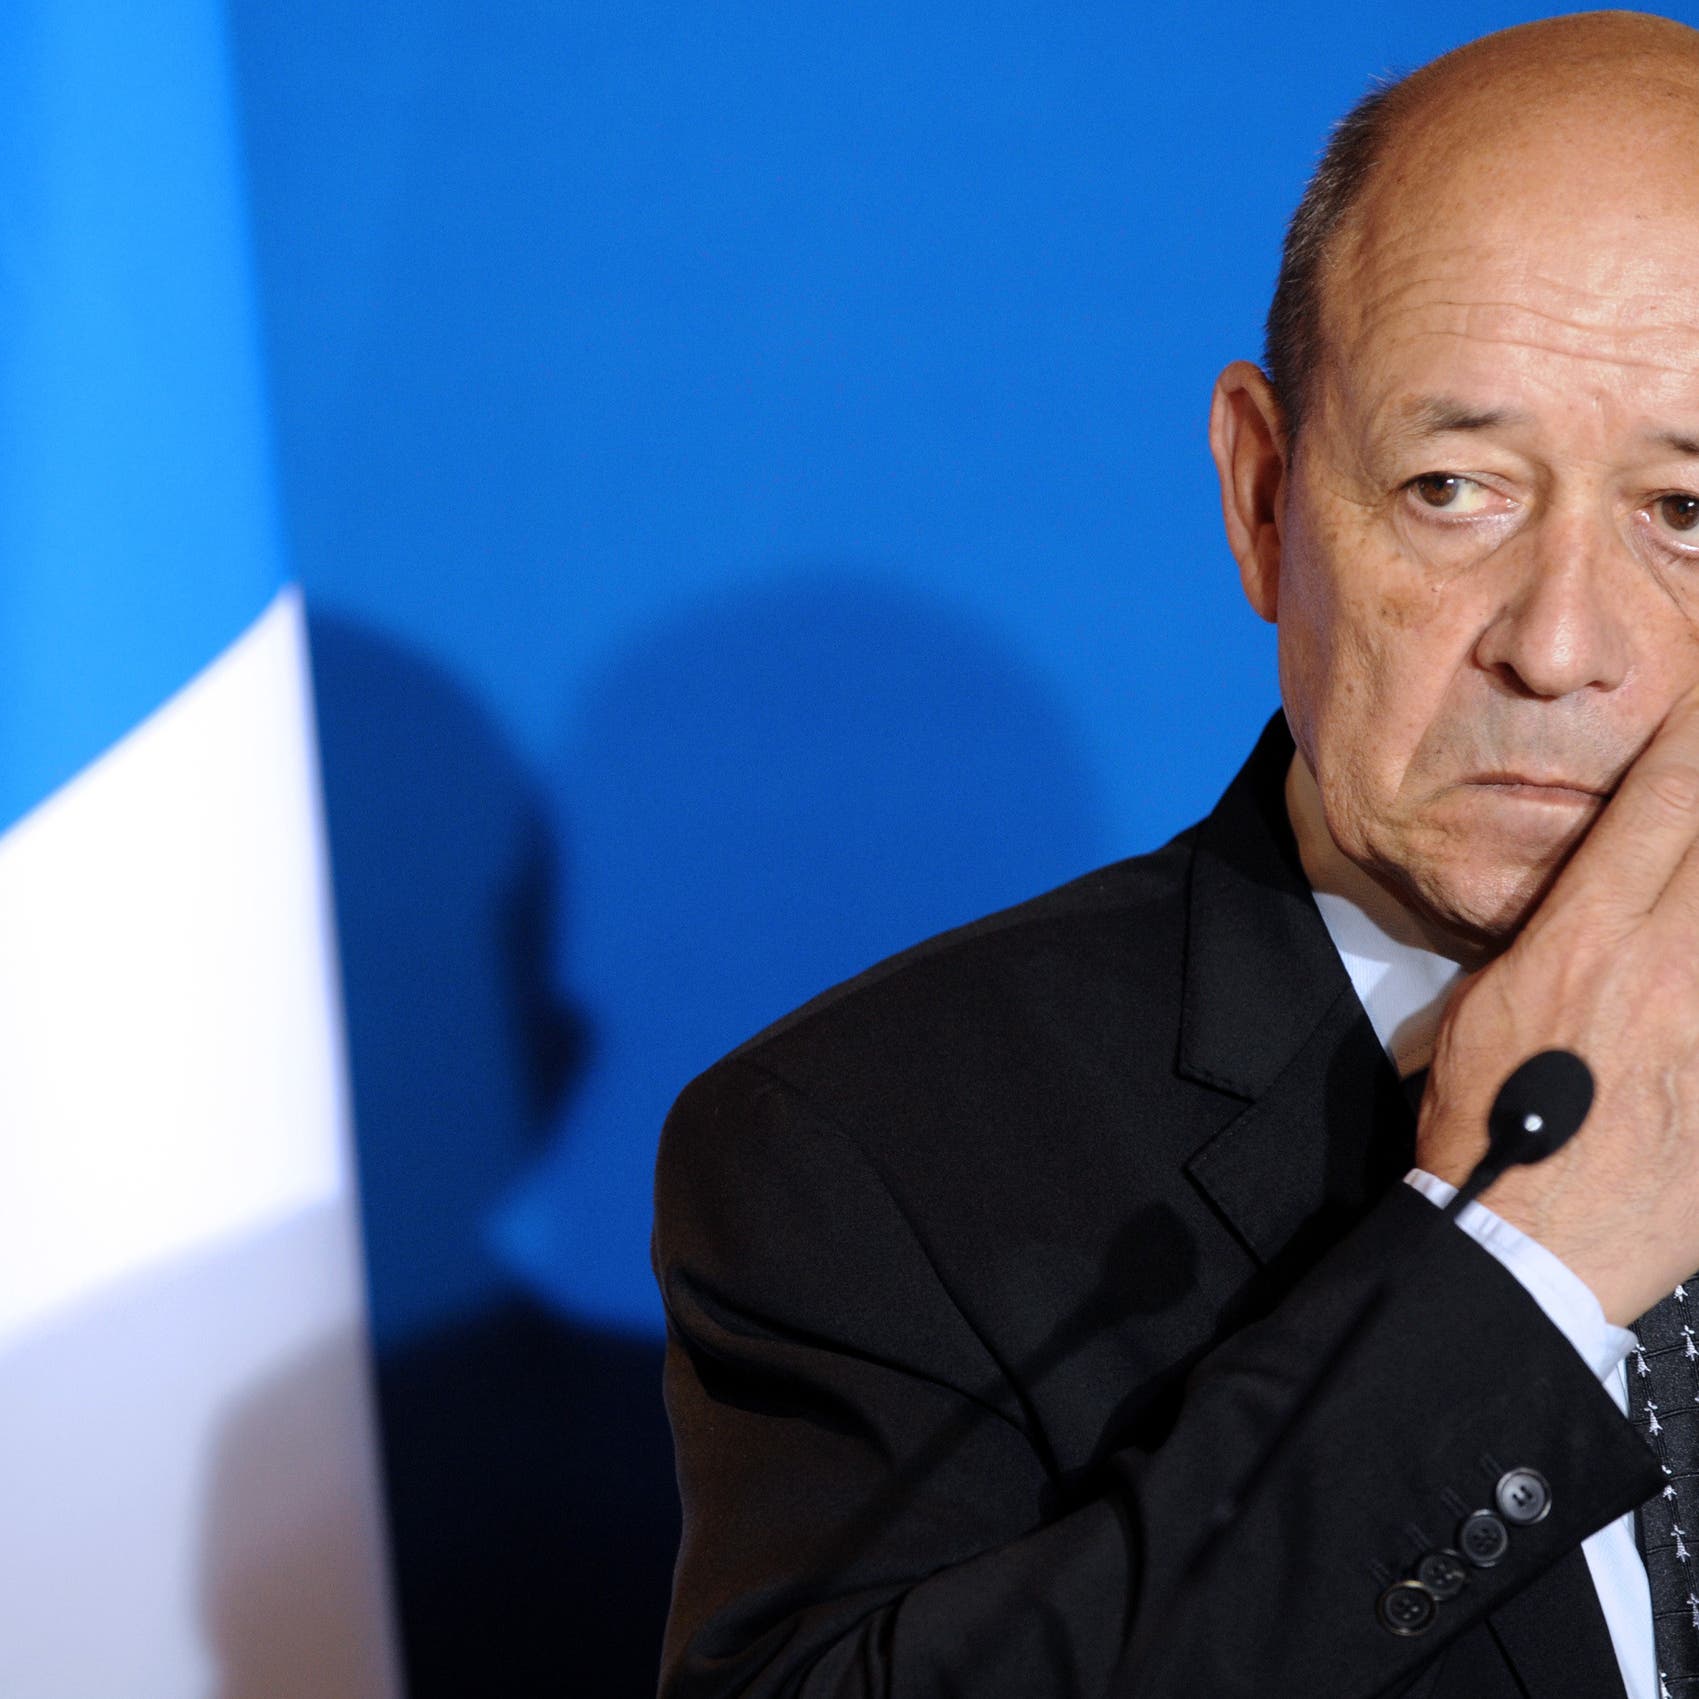 وزير الخارجية الفرنسي يحجر نفسه لمخالطته مصابا بكورونا